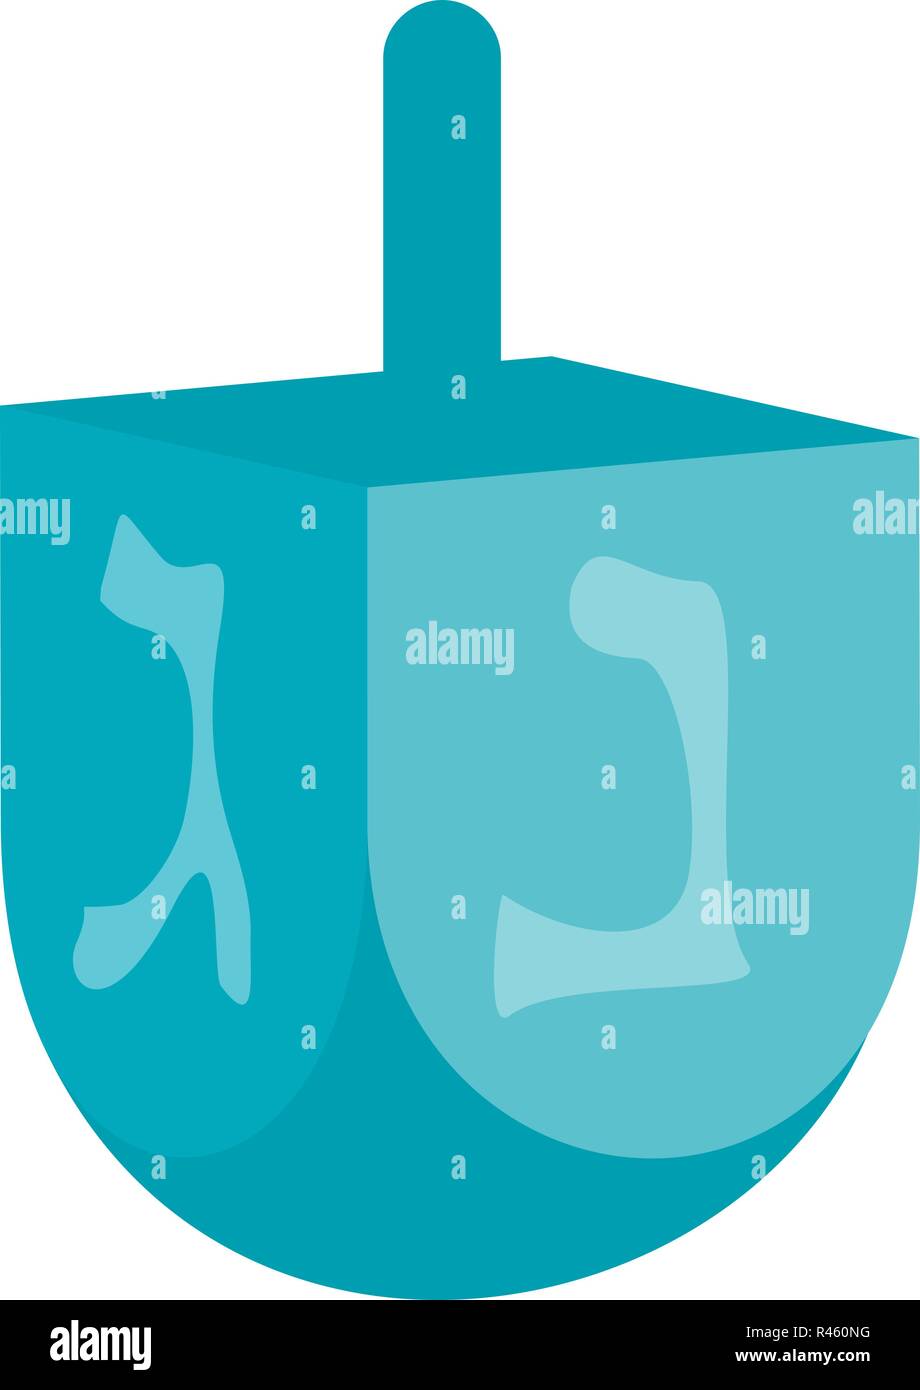 Icône dreidel juif. Télévision illustration de l'icône vecteur dreidel juif pour web isolated on white Illustration de Vecteur